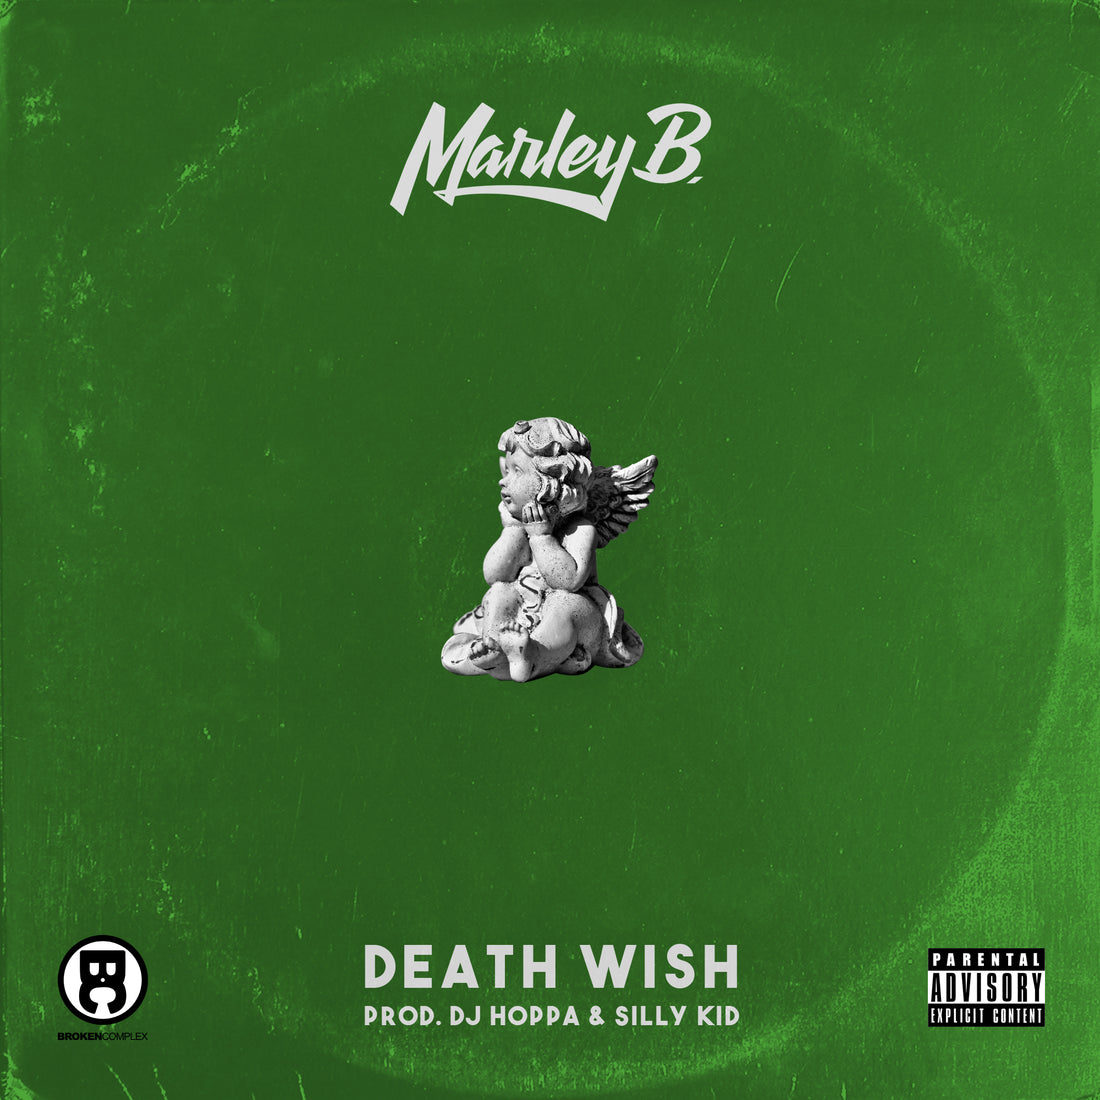 NEW SINGLE: Marley B. - "Death Wish"